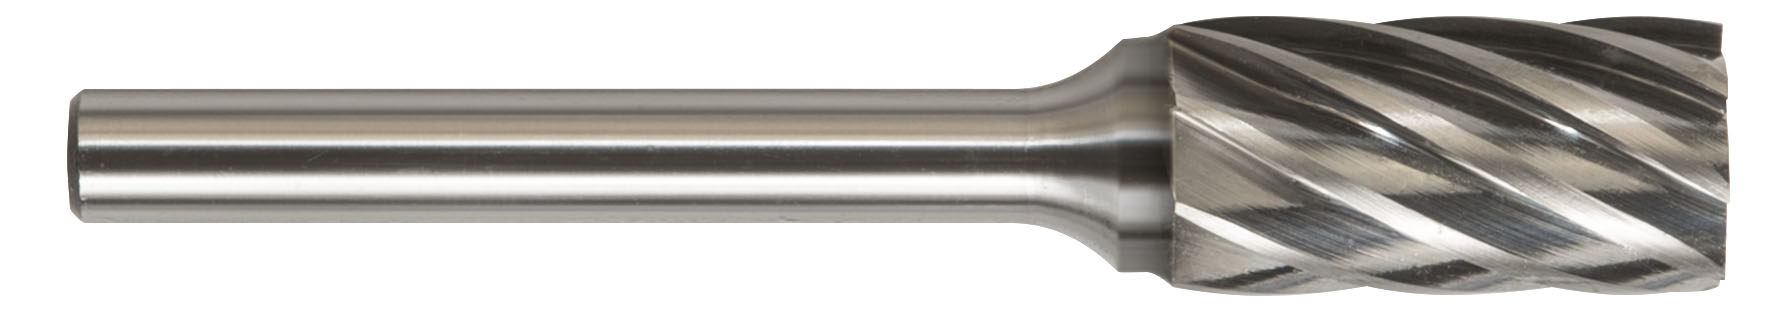 Drillco Cutting Tools Solid Carbide Bur Aluminum Cut 7CAL124 SC-3NF 